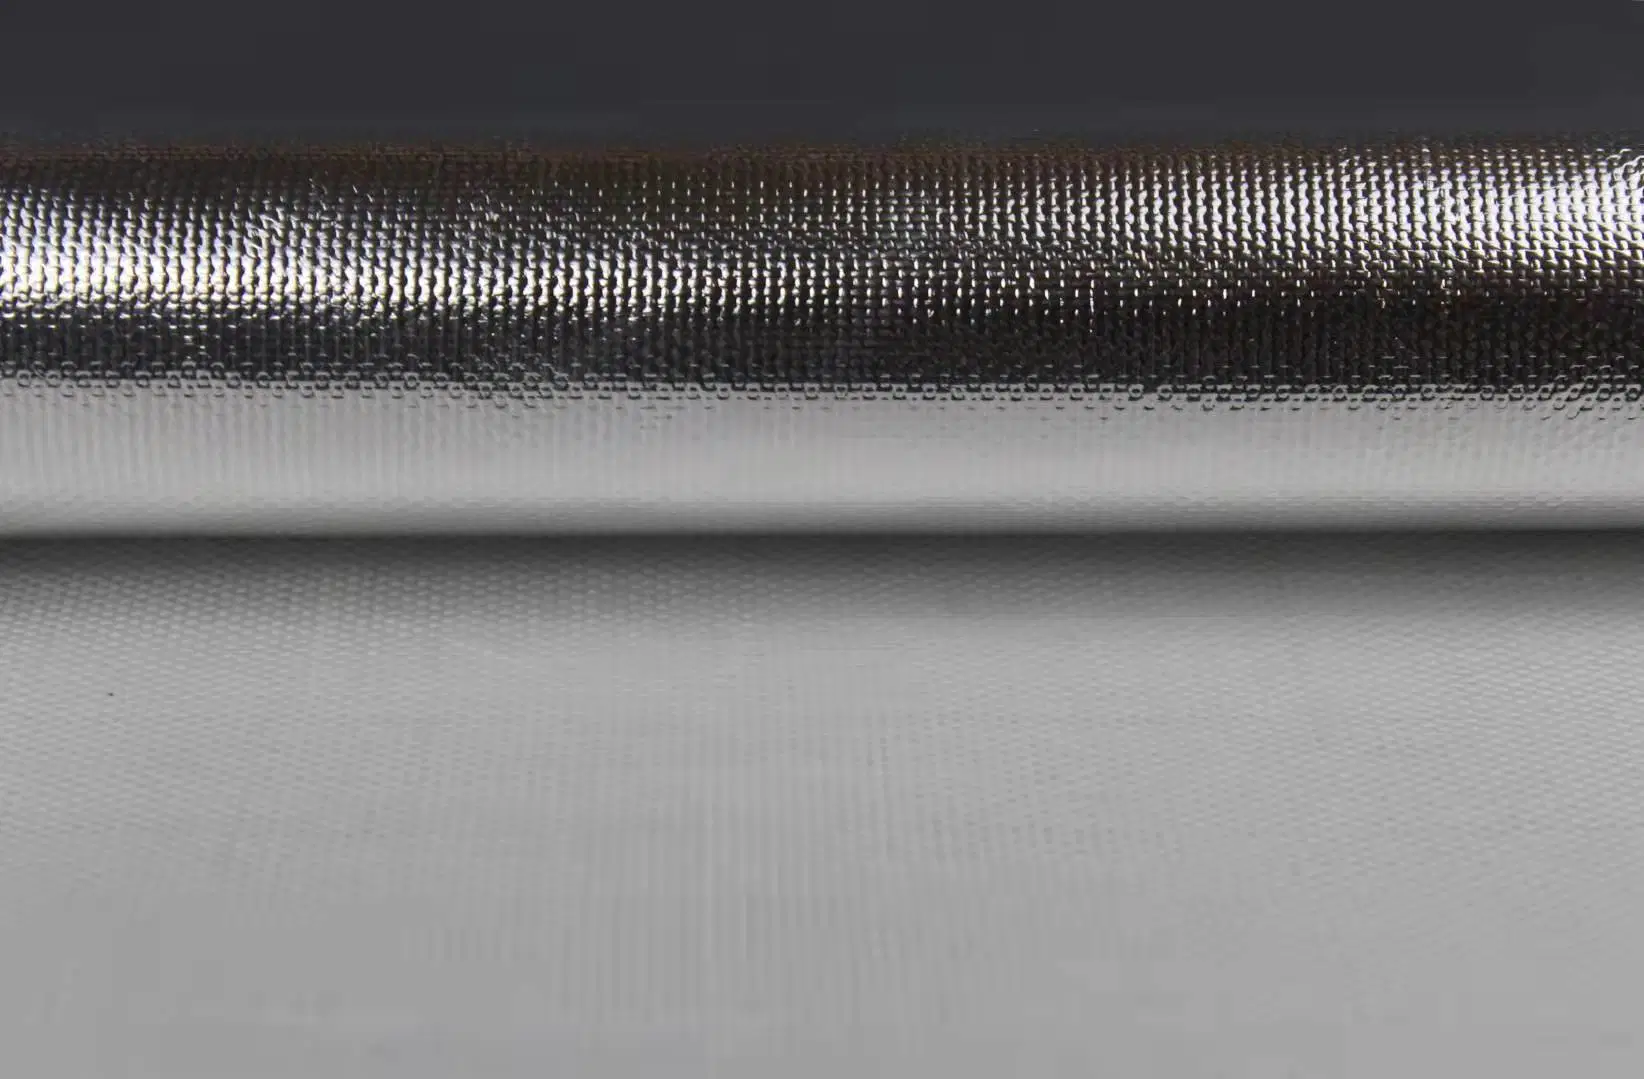 El papel de aluminio recubierto de tela de fibra de vidrio de aislamiento de calor